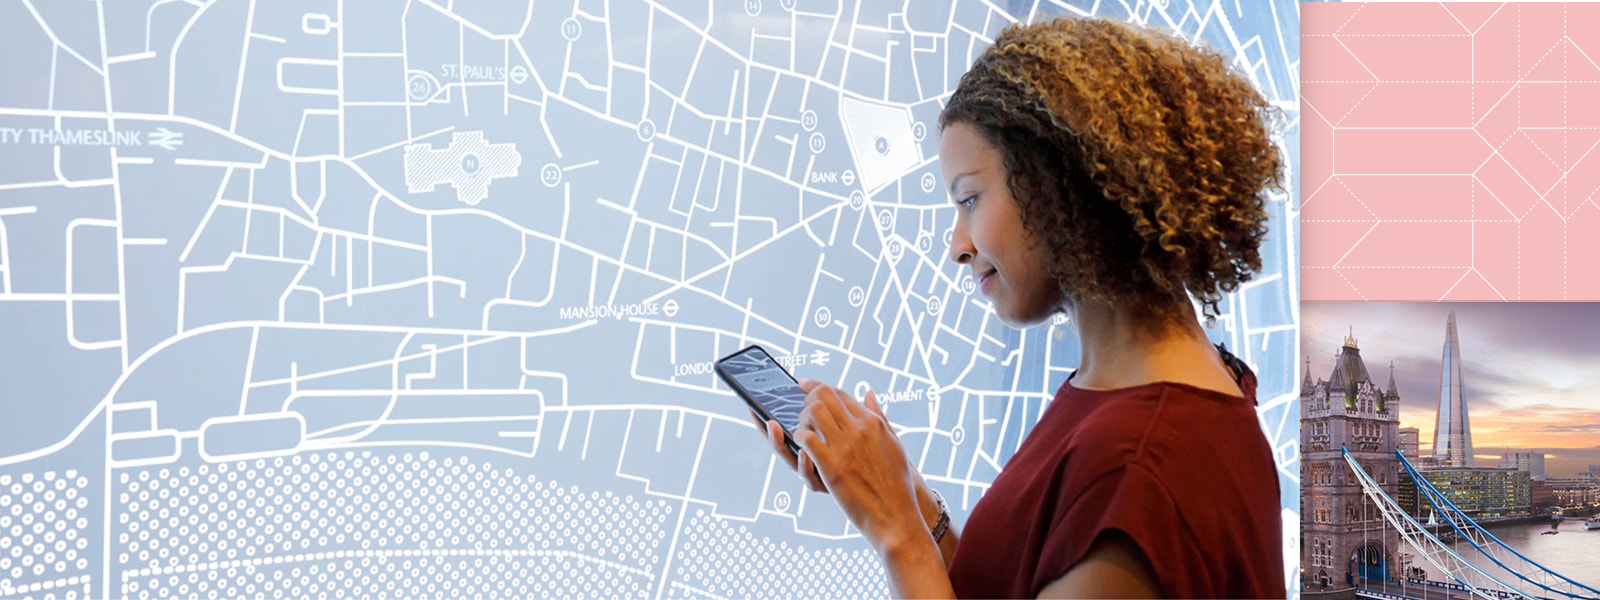 Eine Frau nutzt ein mobiles Gerät vor einem Stadtplan.